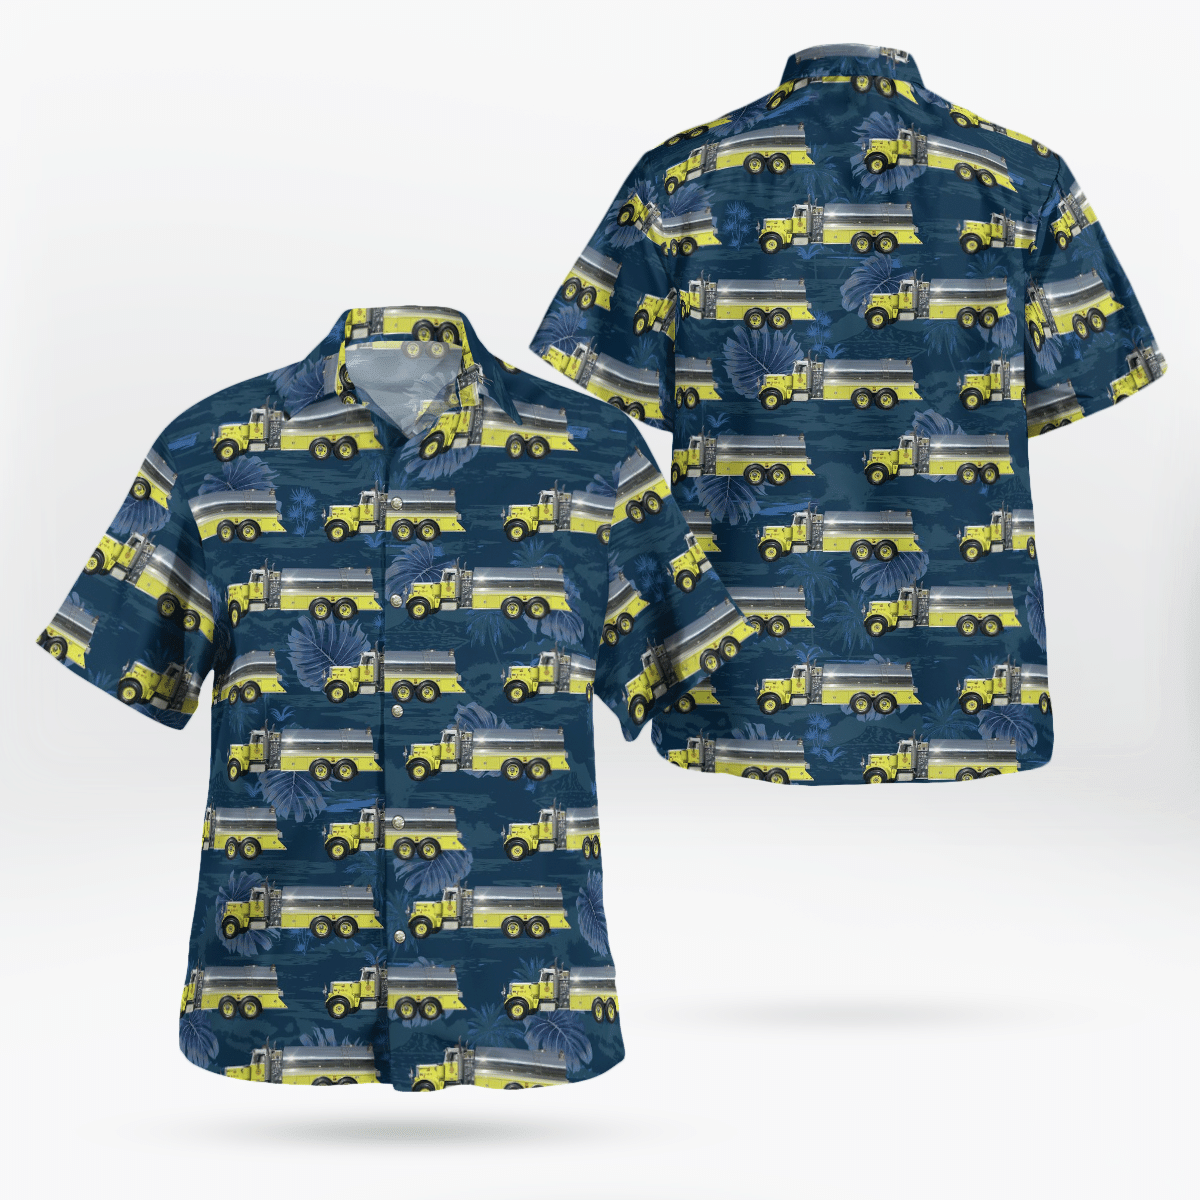 You won't regret buying these Aloha Shirt 212